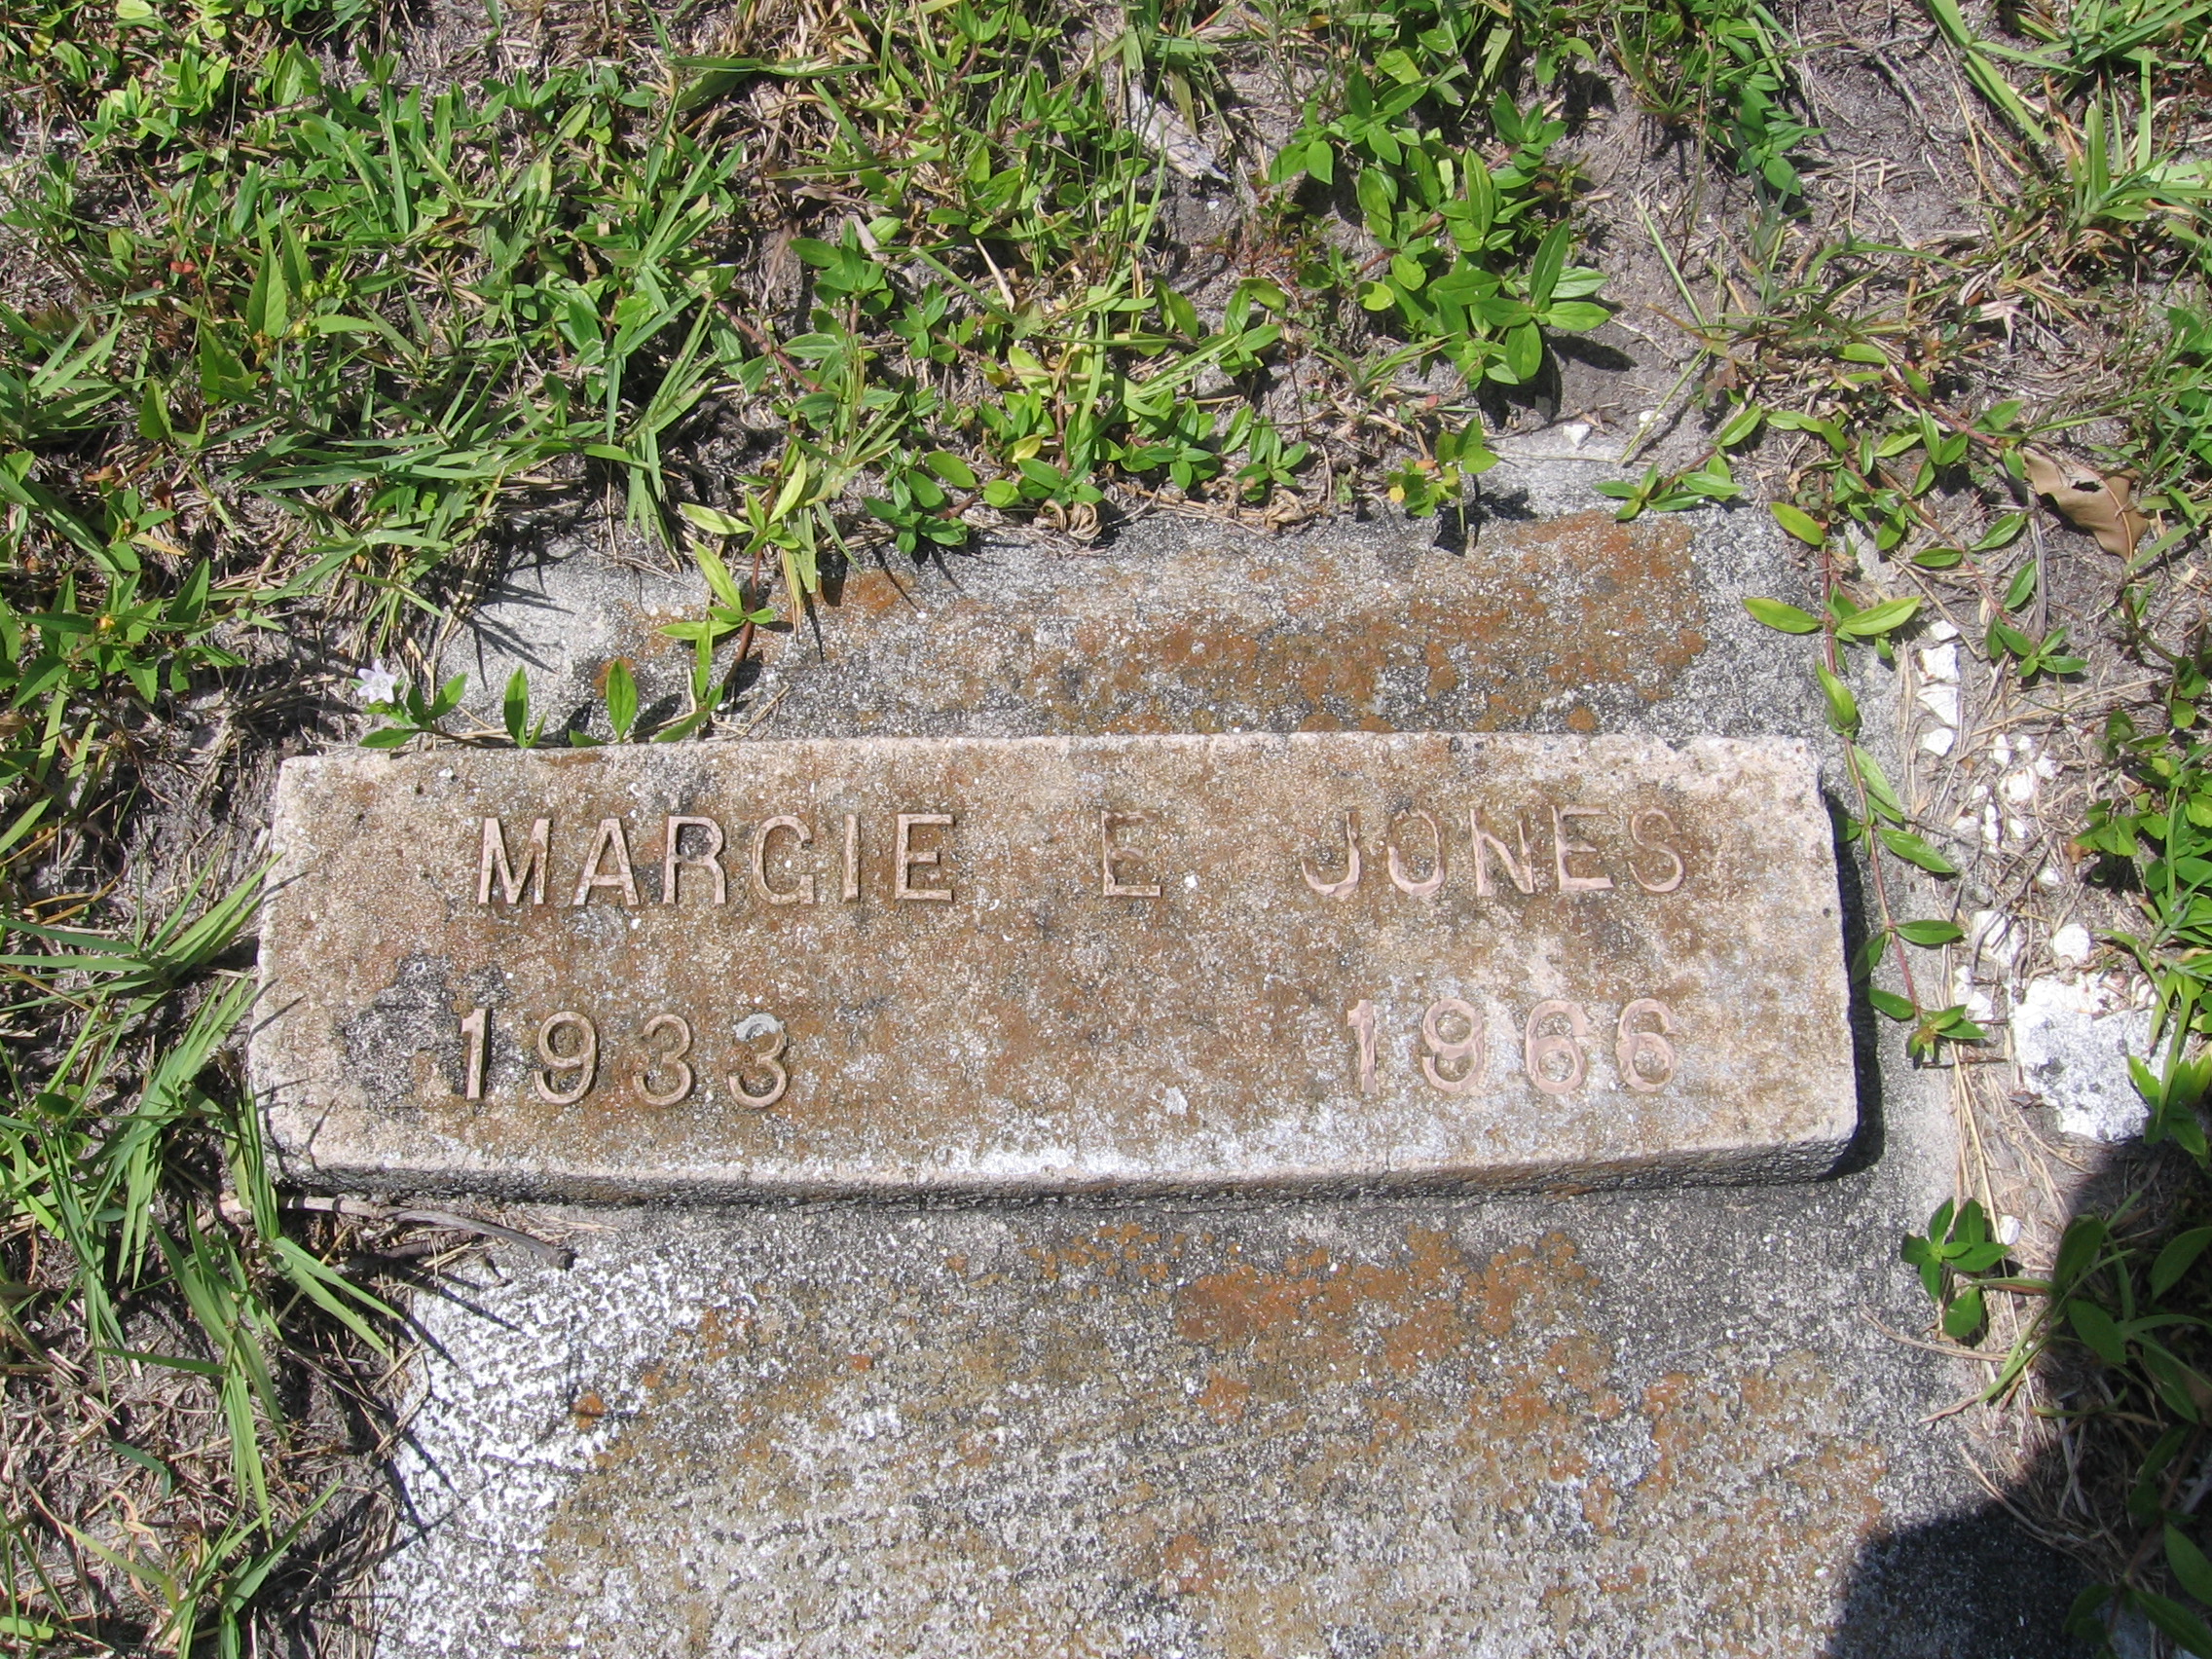 Margie E Jones